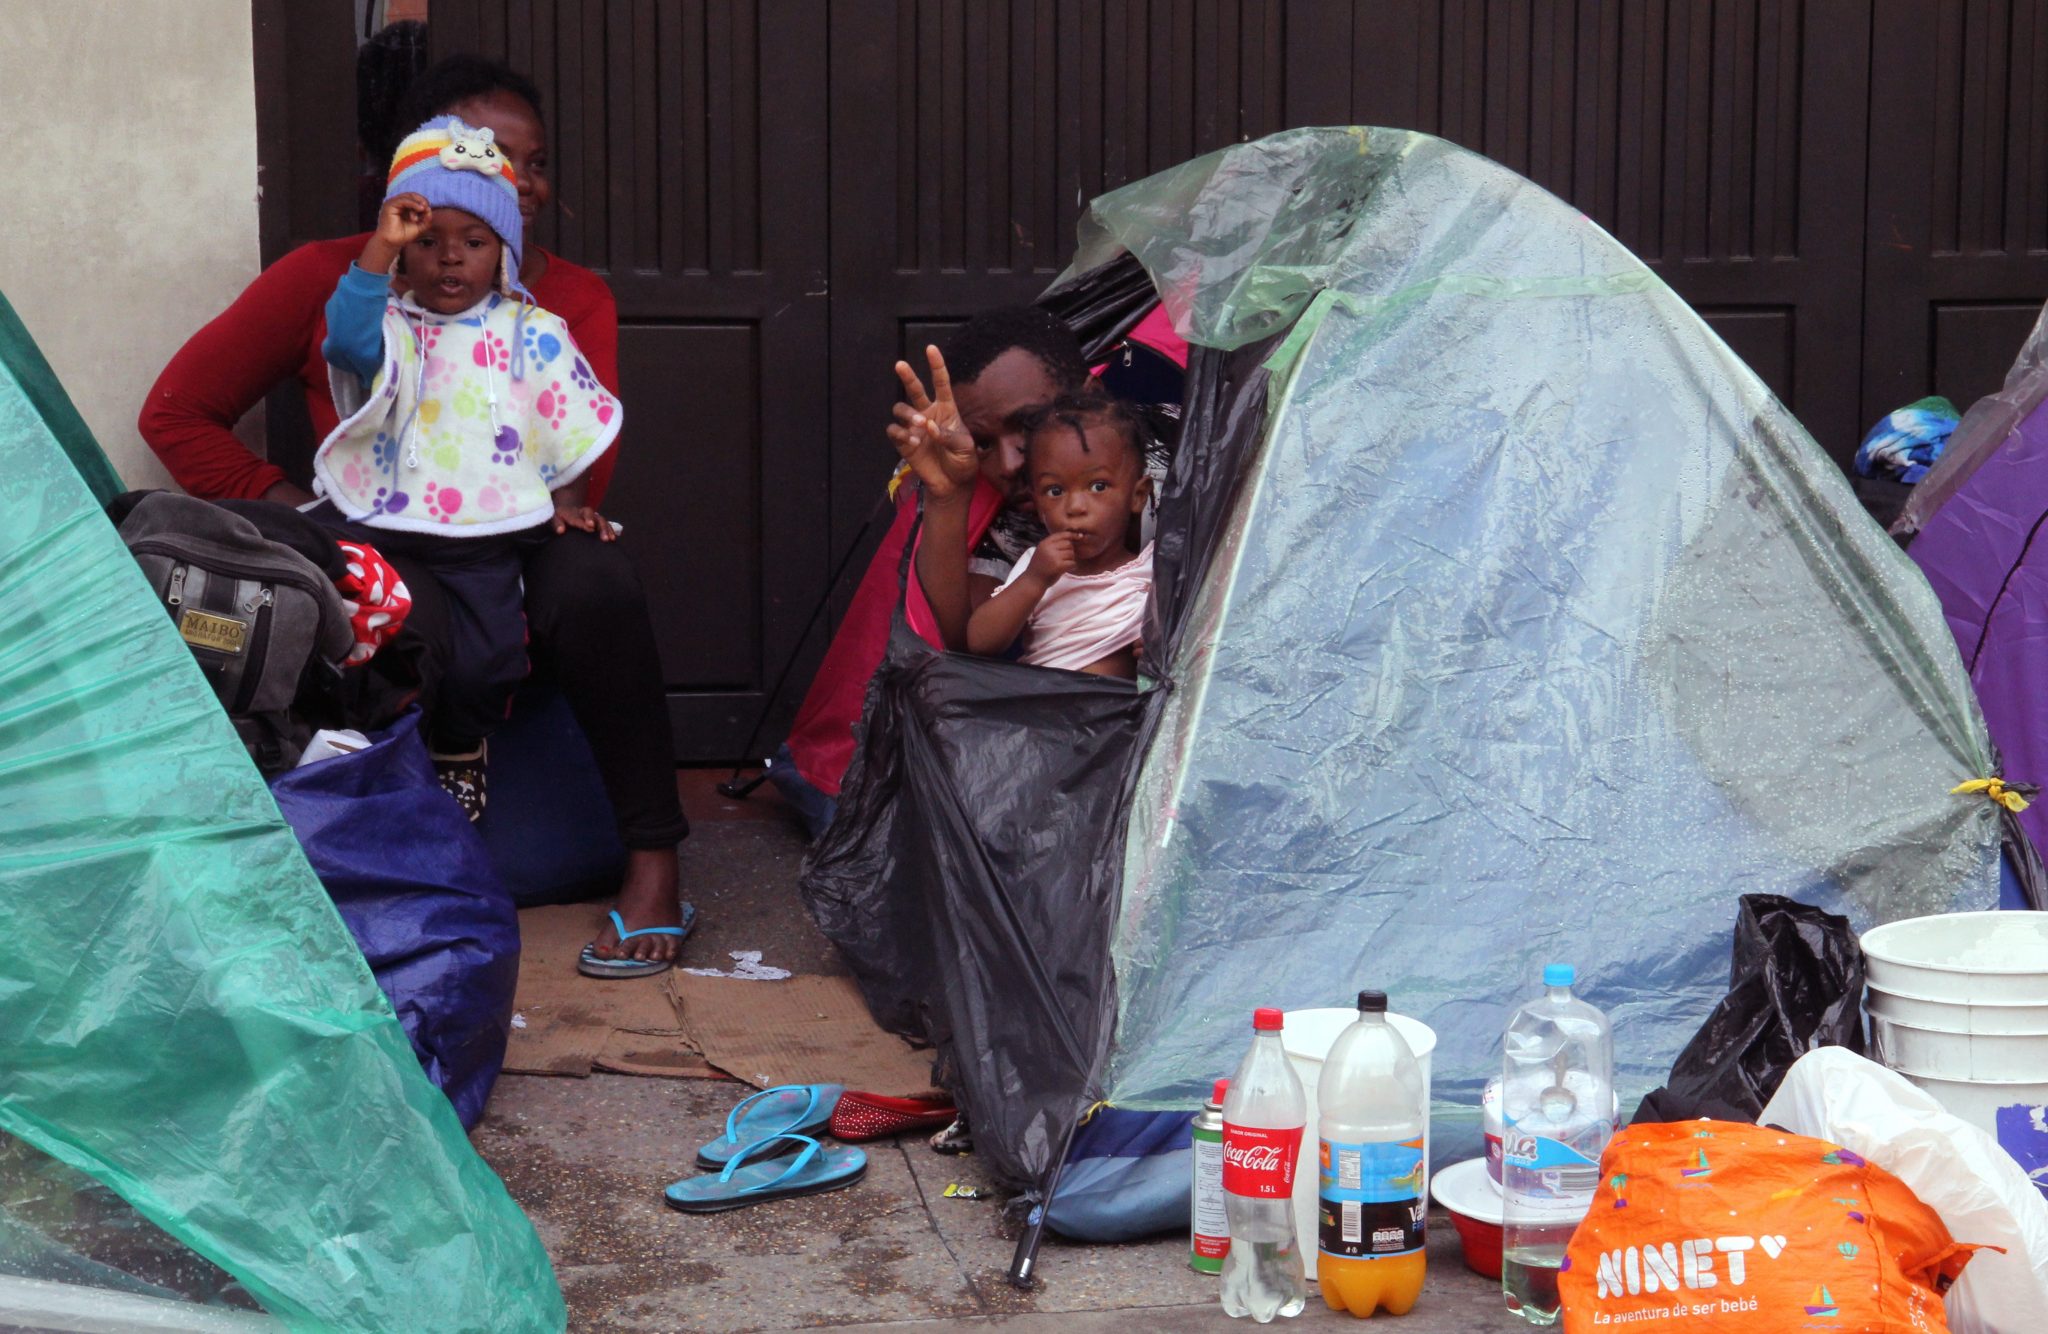 Rodziny migrantów z Haiti w drodze do Ameryki Północnej odpoczywają w namiotach na ulicach miast Kolumbii, fot. EPA/Sebastian Leonardo Castro 